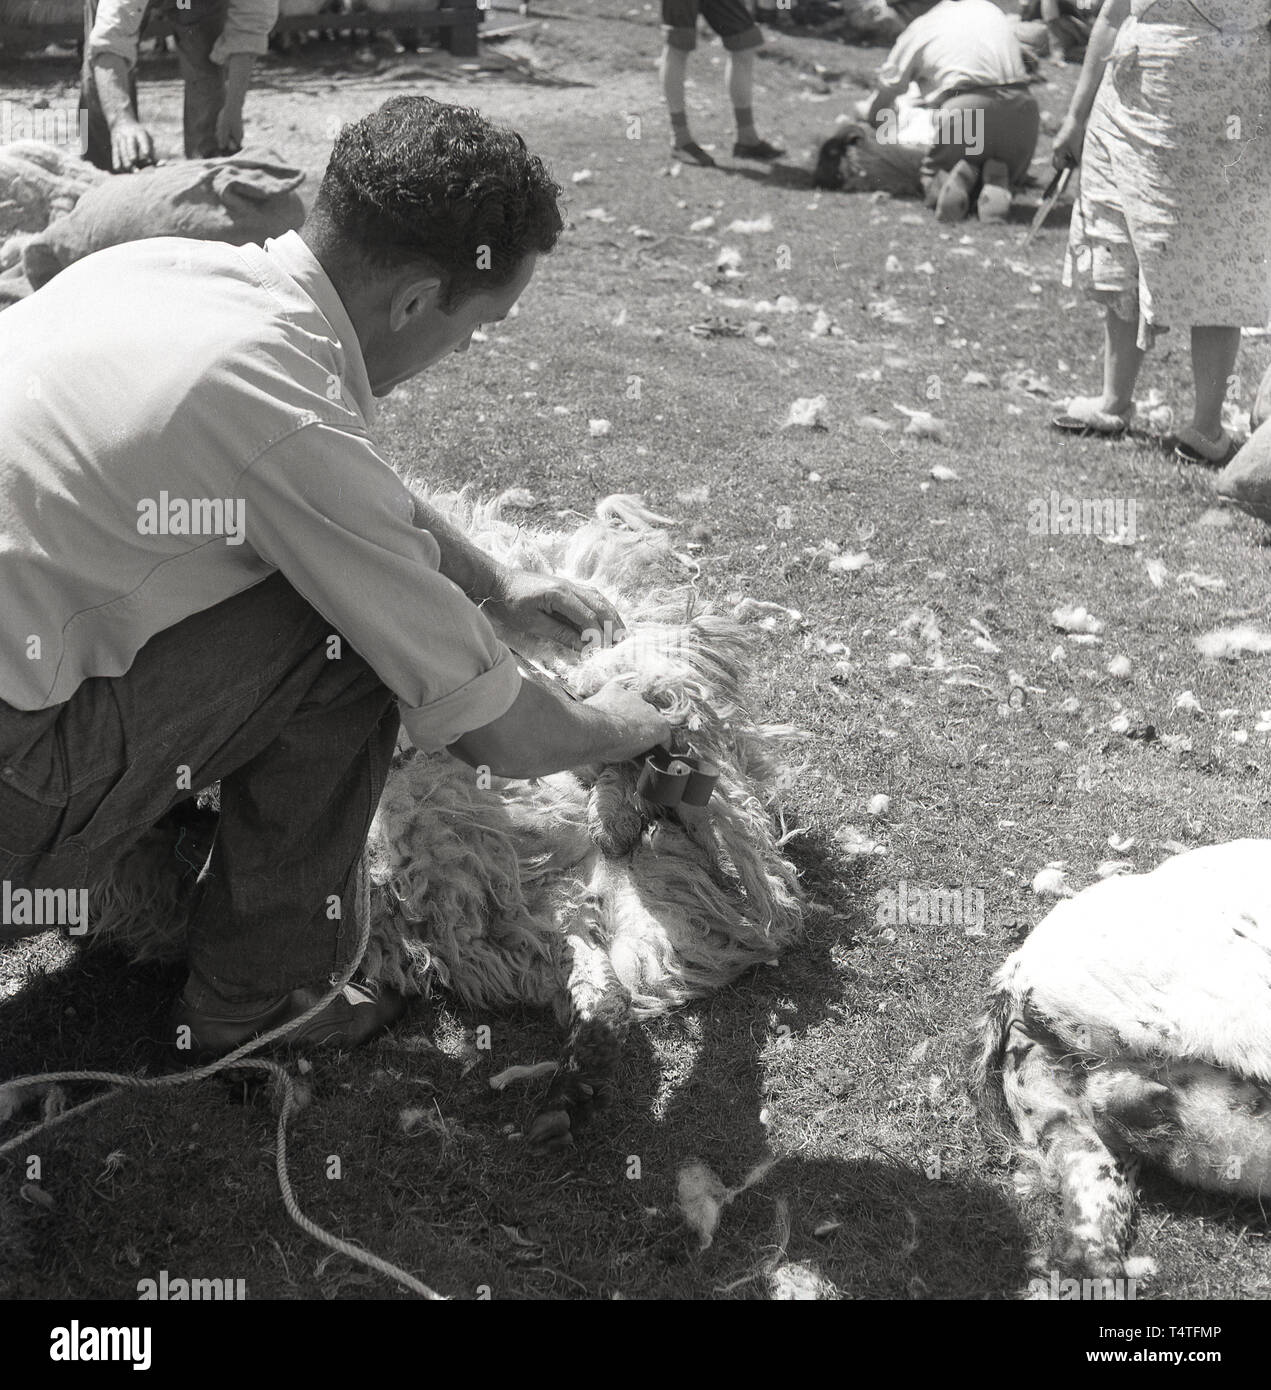 1960, historische, Schafe scheren, Landwirt oder 57309 mit Klinge schere schere die Wolle weg von einem Schaf, England, UK. Stockfoto